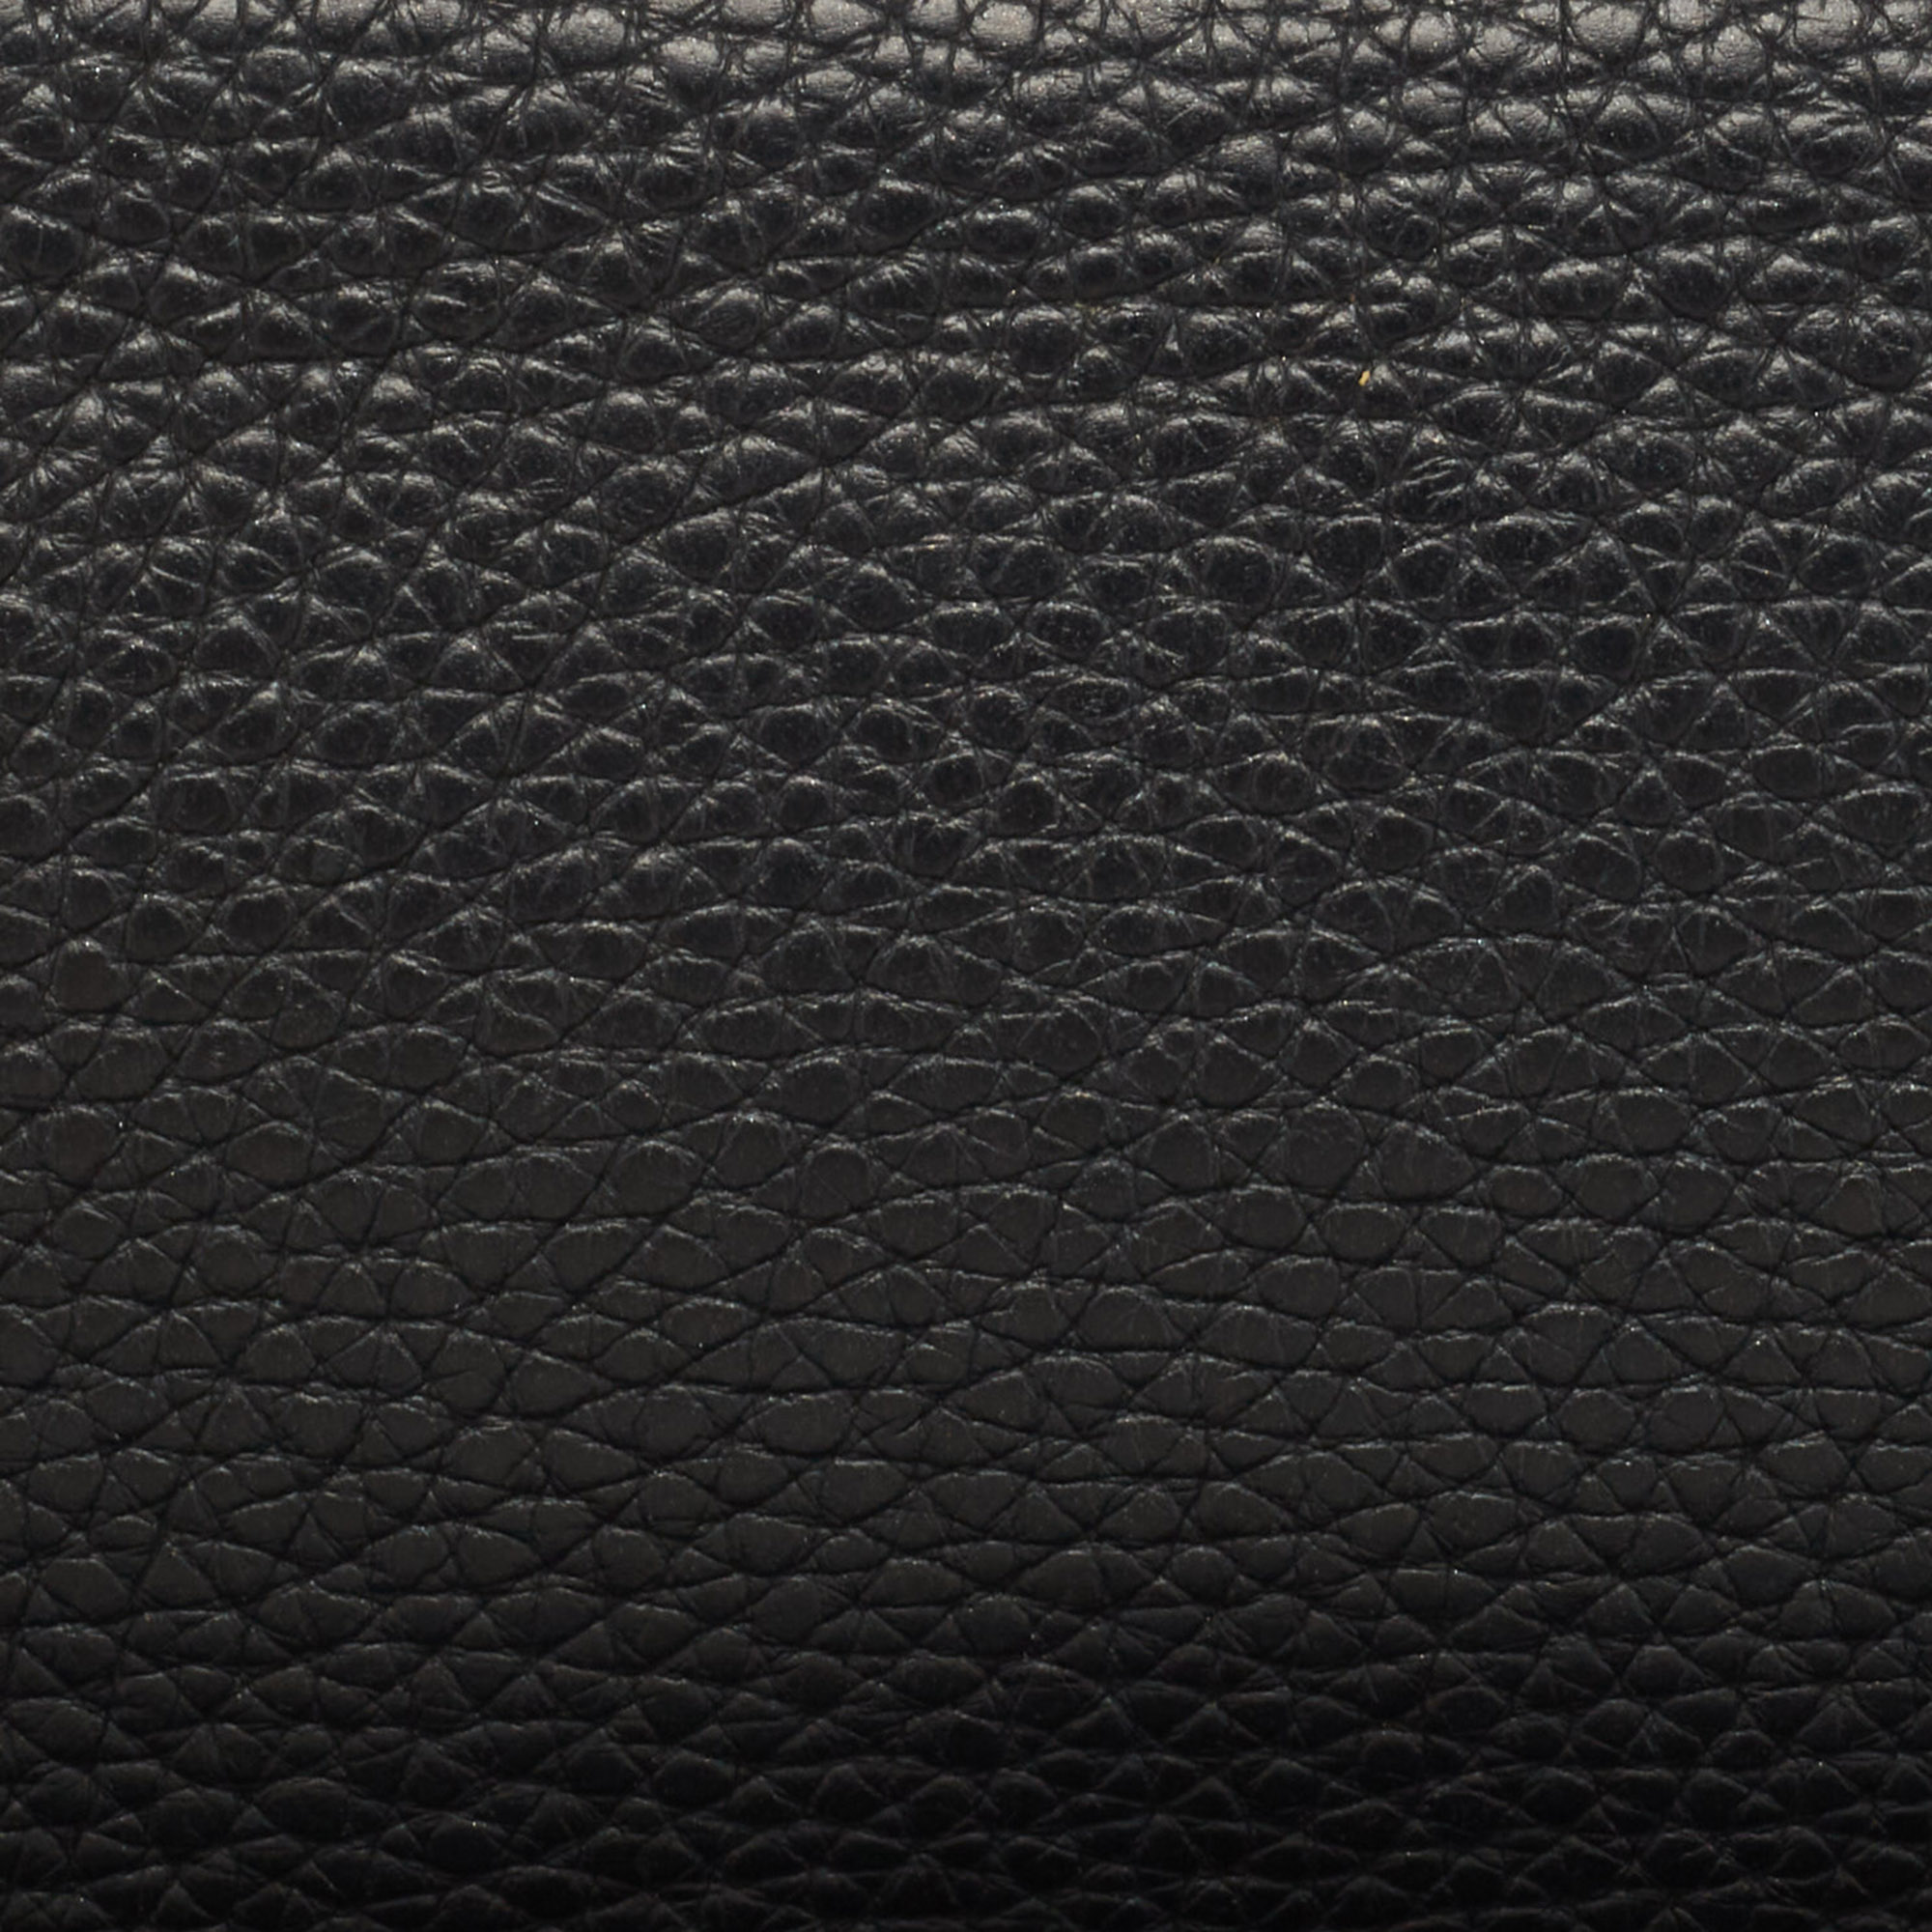 Dior Black/Pink Leather Diorissimo Voyageur  Zip Around Wallet